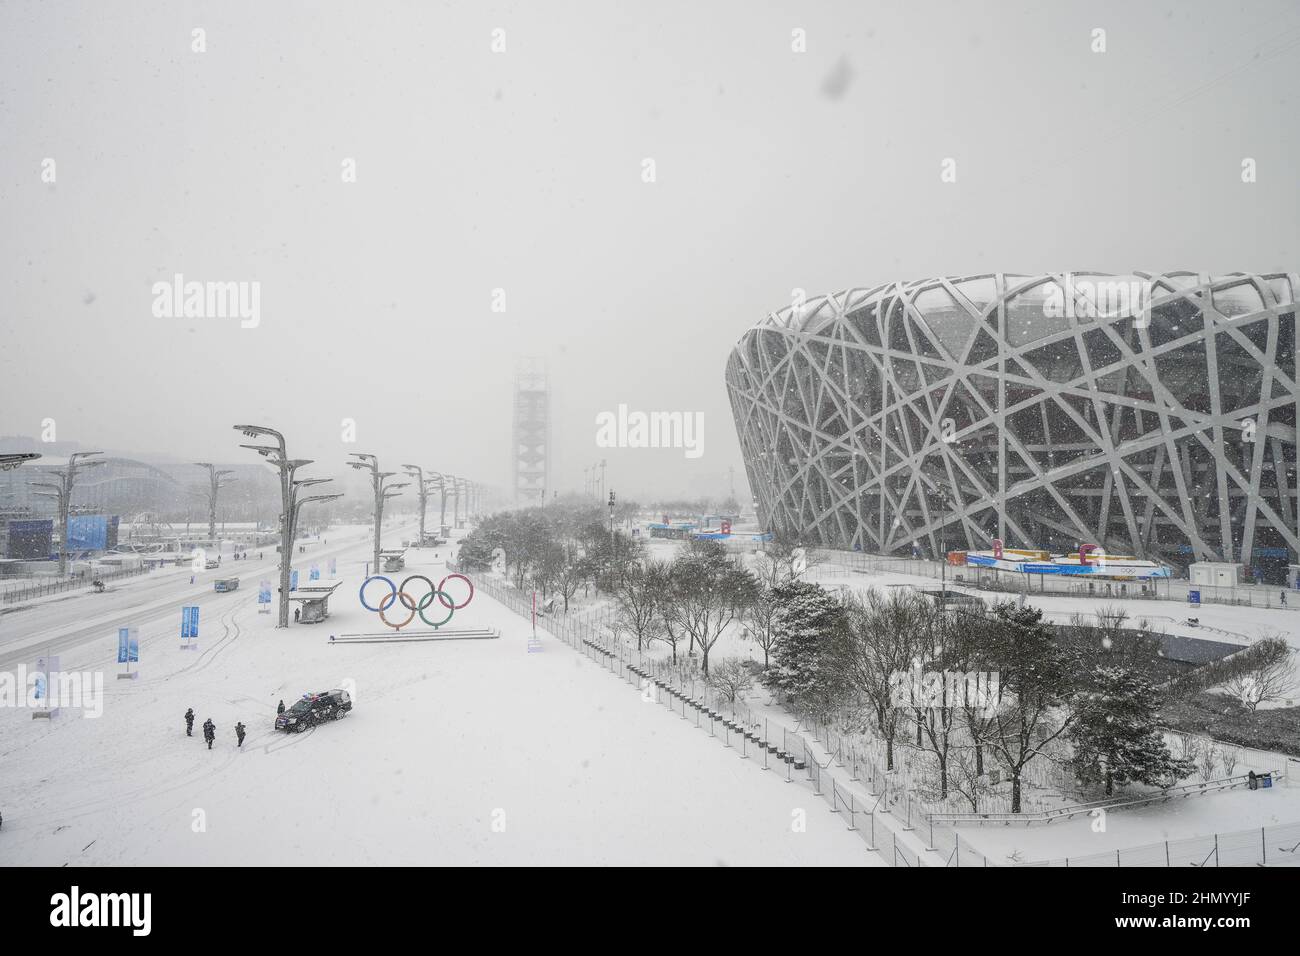 La neige couvre le sol devant les anneaux olympiques à l'extérieur du stade national lors d'une tempête de neige aux Jeux olympiques d'hiver de Beijing 2022, le dimanche 13 février 2022. Photo de Paul Hanna/UPI Banque D'Images